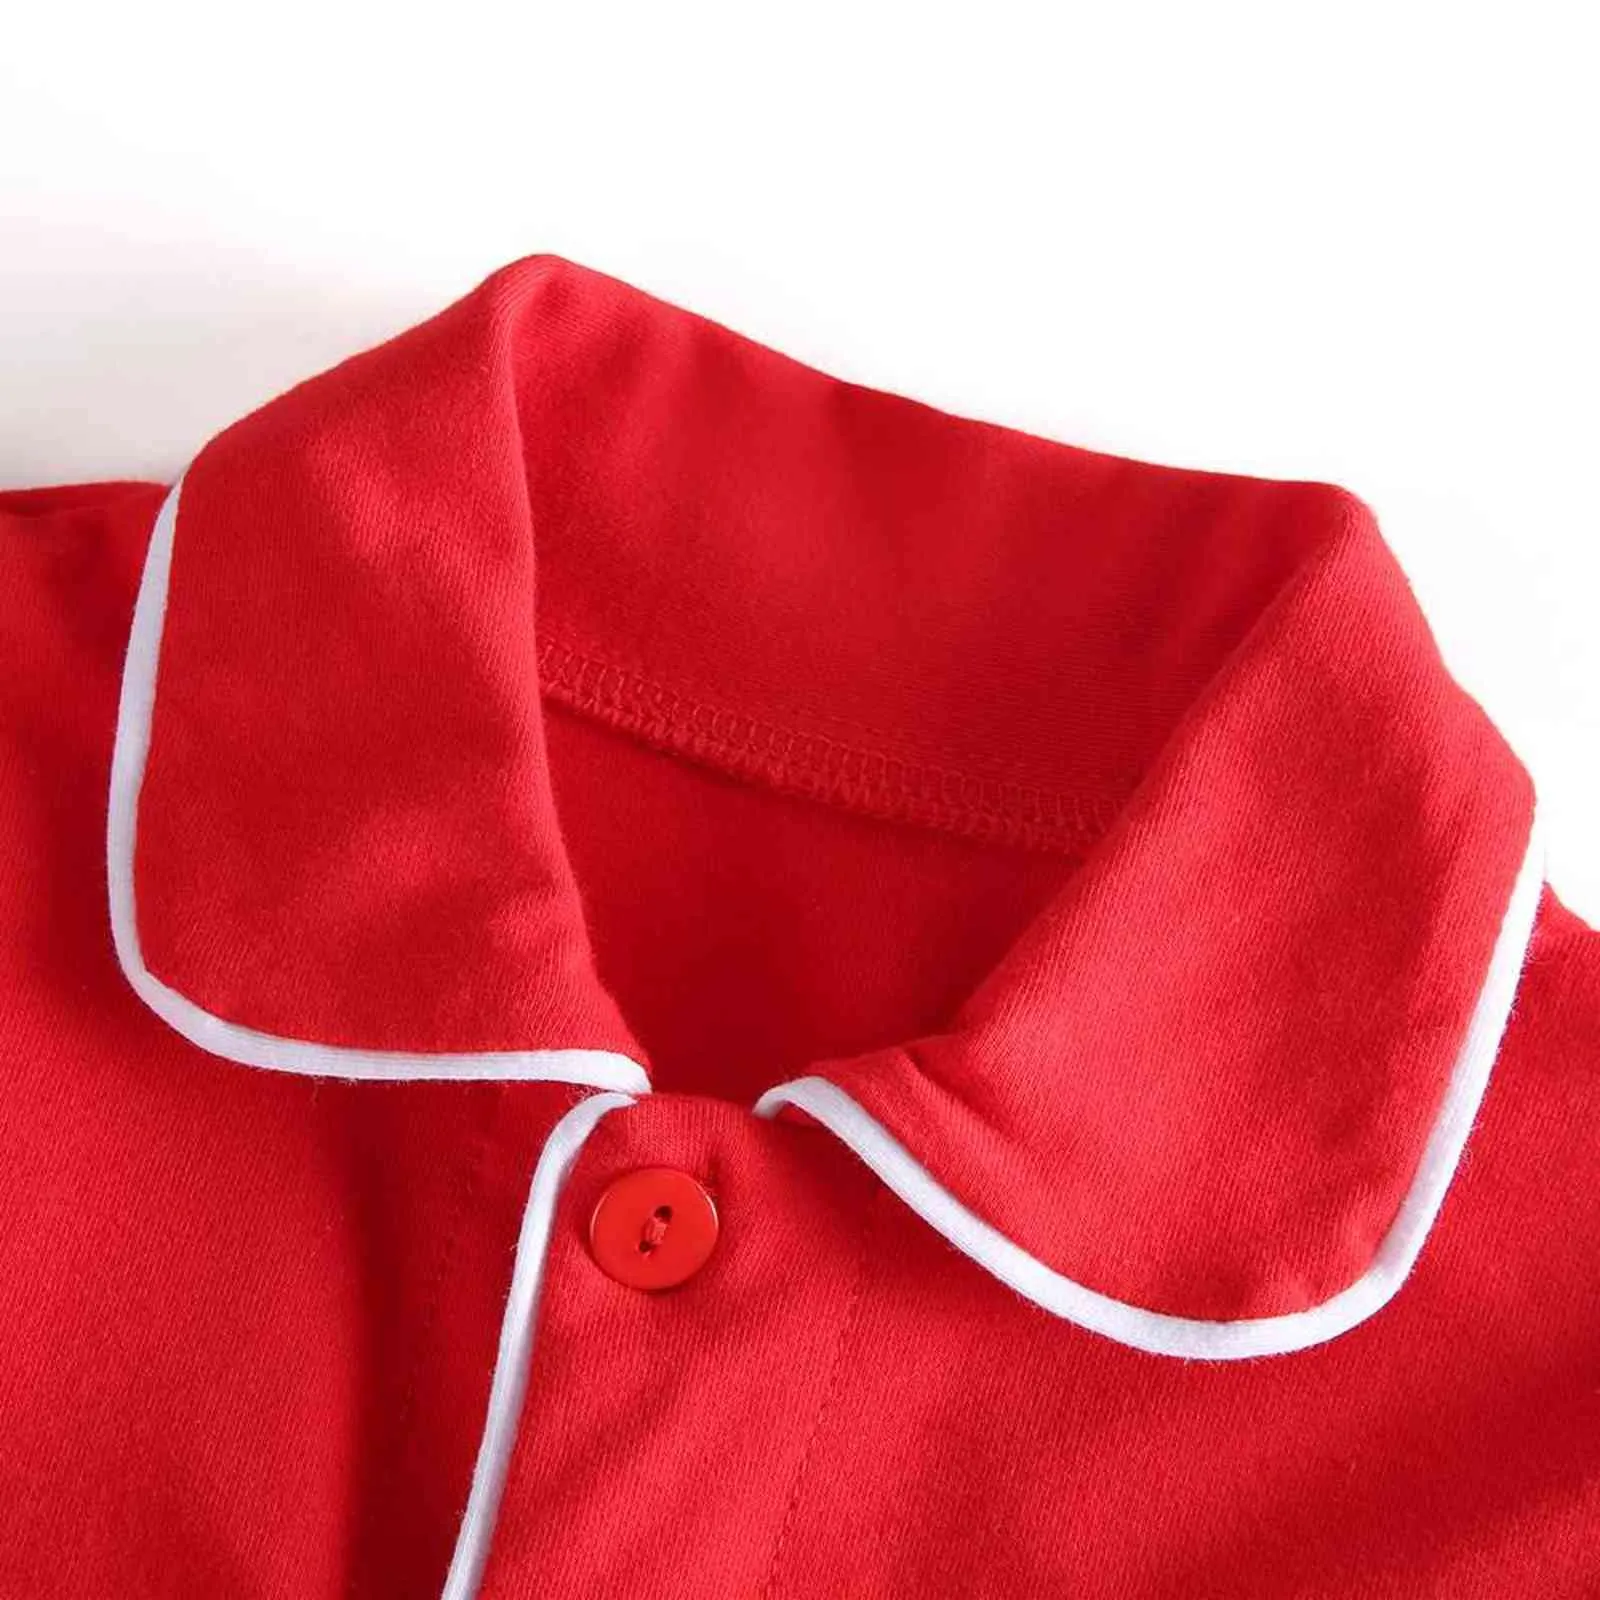 Vinterbutik sammet tyg röda barn kläder pjs med spets småbarn pojkar set pyjamas flicka baby sömnkläder 2111029335557